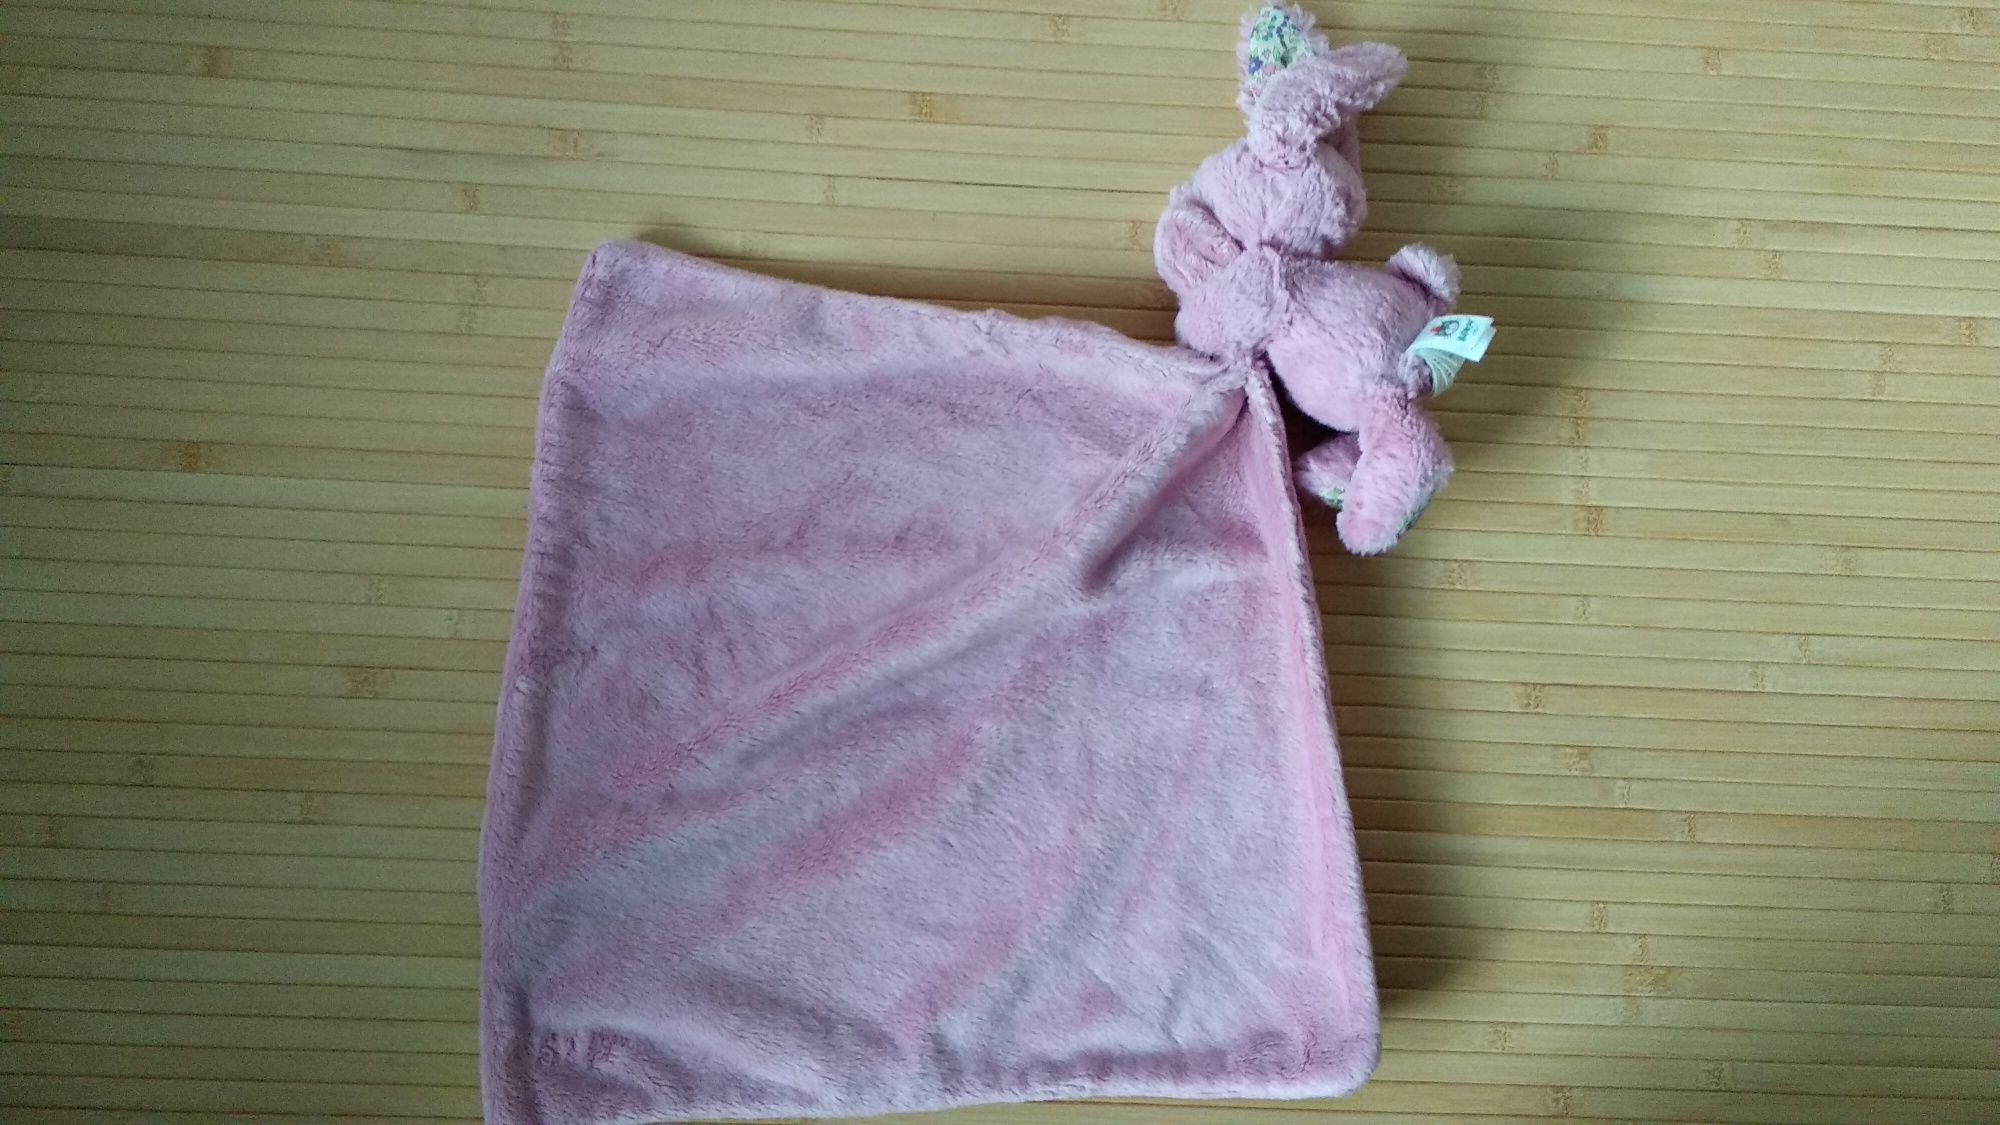 Комфортер Jellycat полотенце зайка